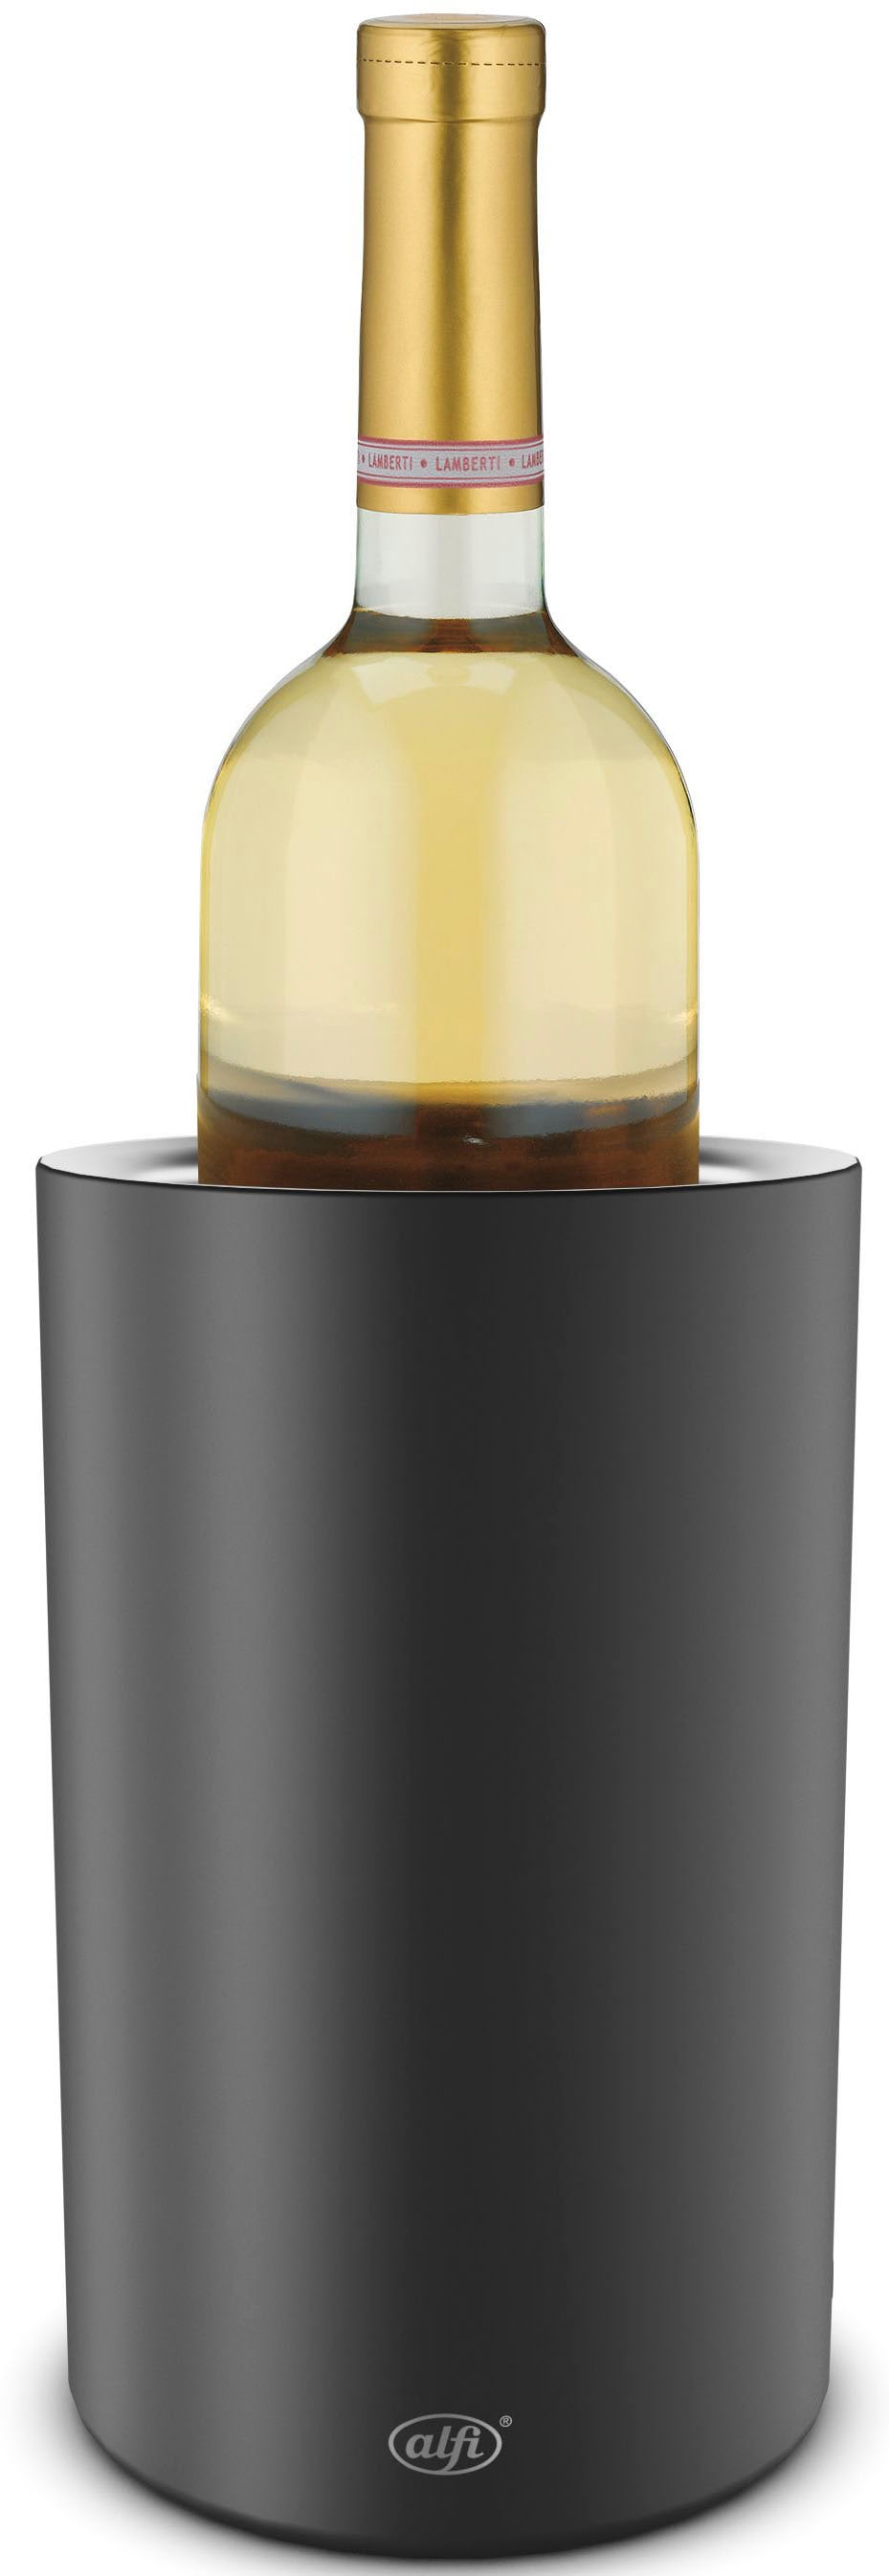 Alfi Weinkühler »VINO«, (1 tlg.), Edelstahleinsatz, für Flaschengrößen von 0,70 l bis 1,00 l